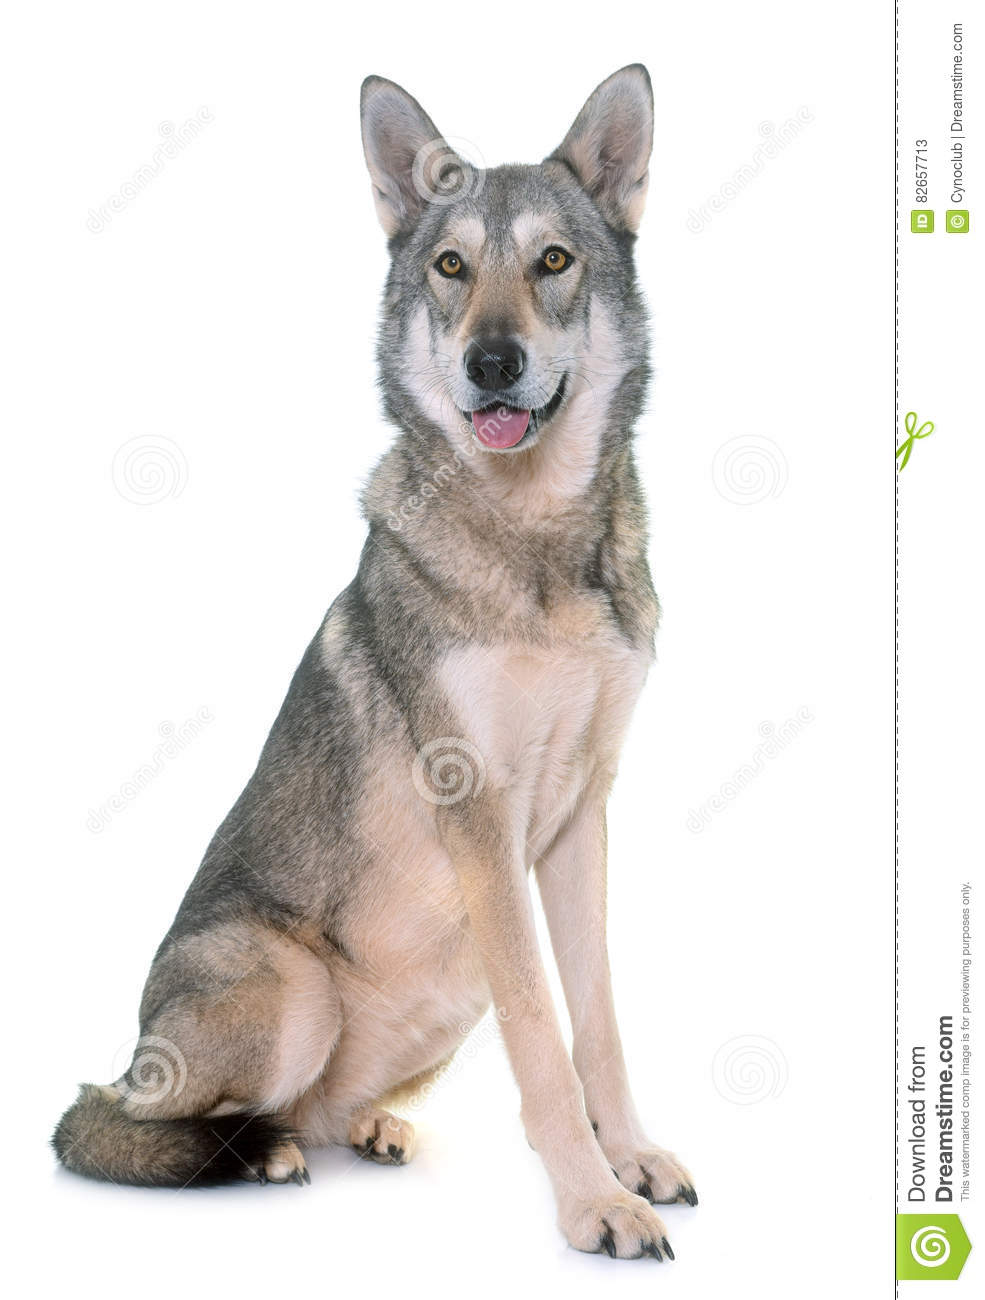 Wolfdog of Sarlos (Saarlooswolfdog)